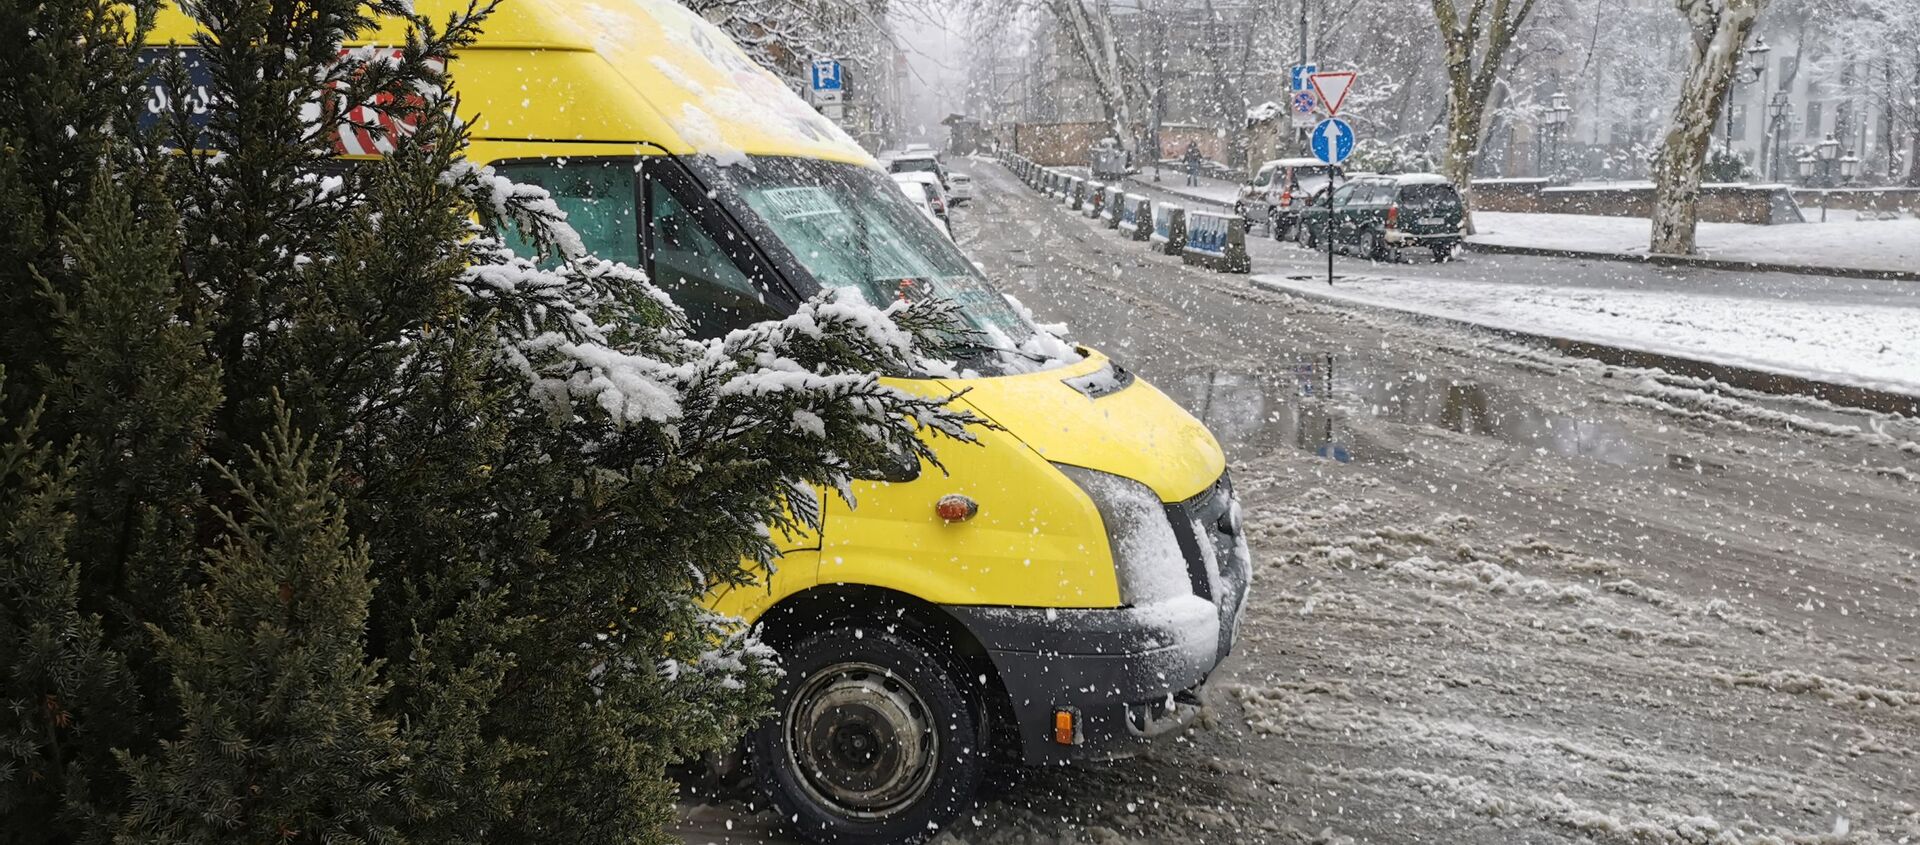 Снегопад в Тбилиси- маршрутные такси на заснеженных дорогах - Sputnik Грузия, 1920, 17.02.2021